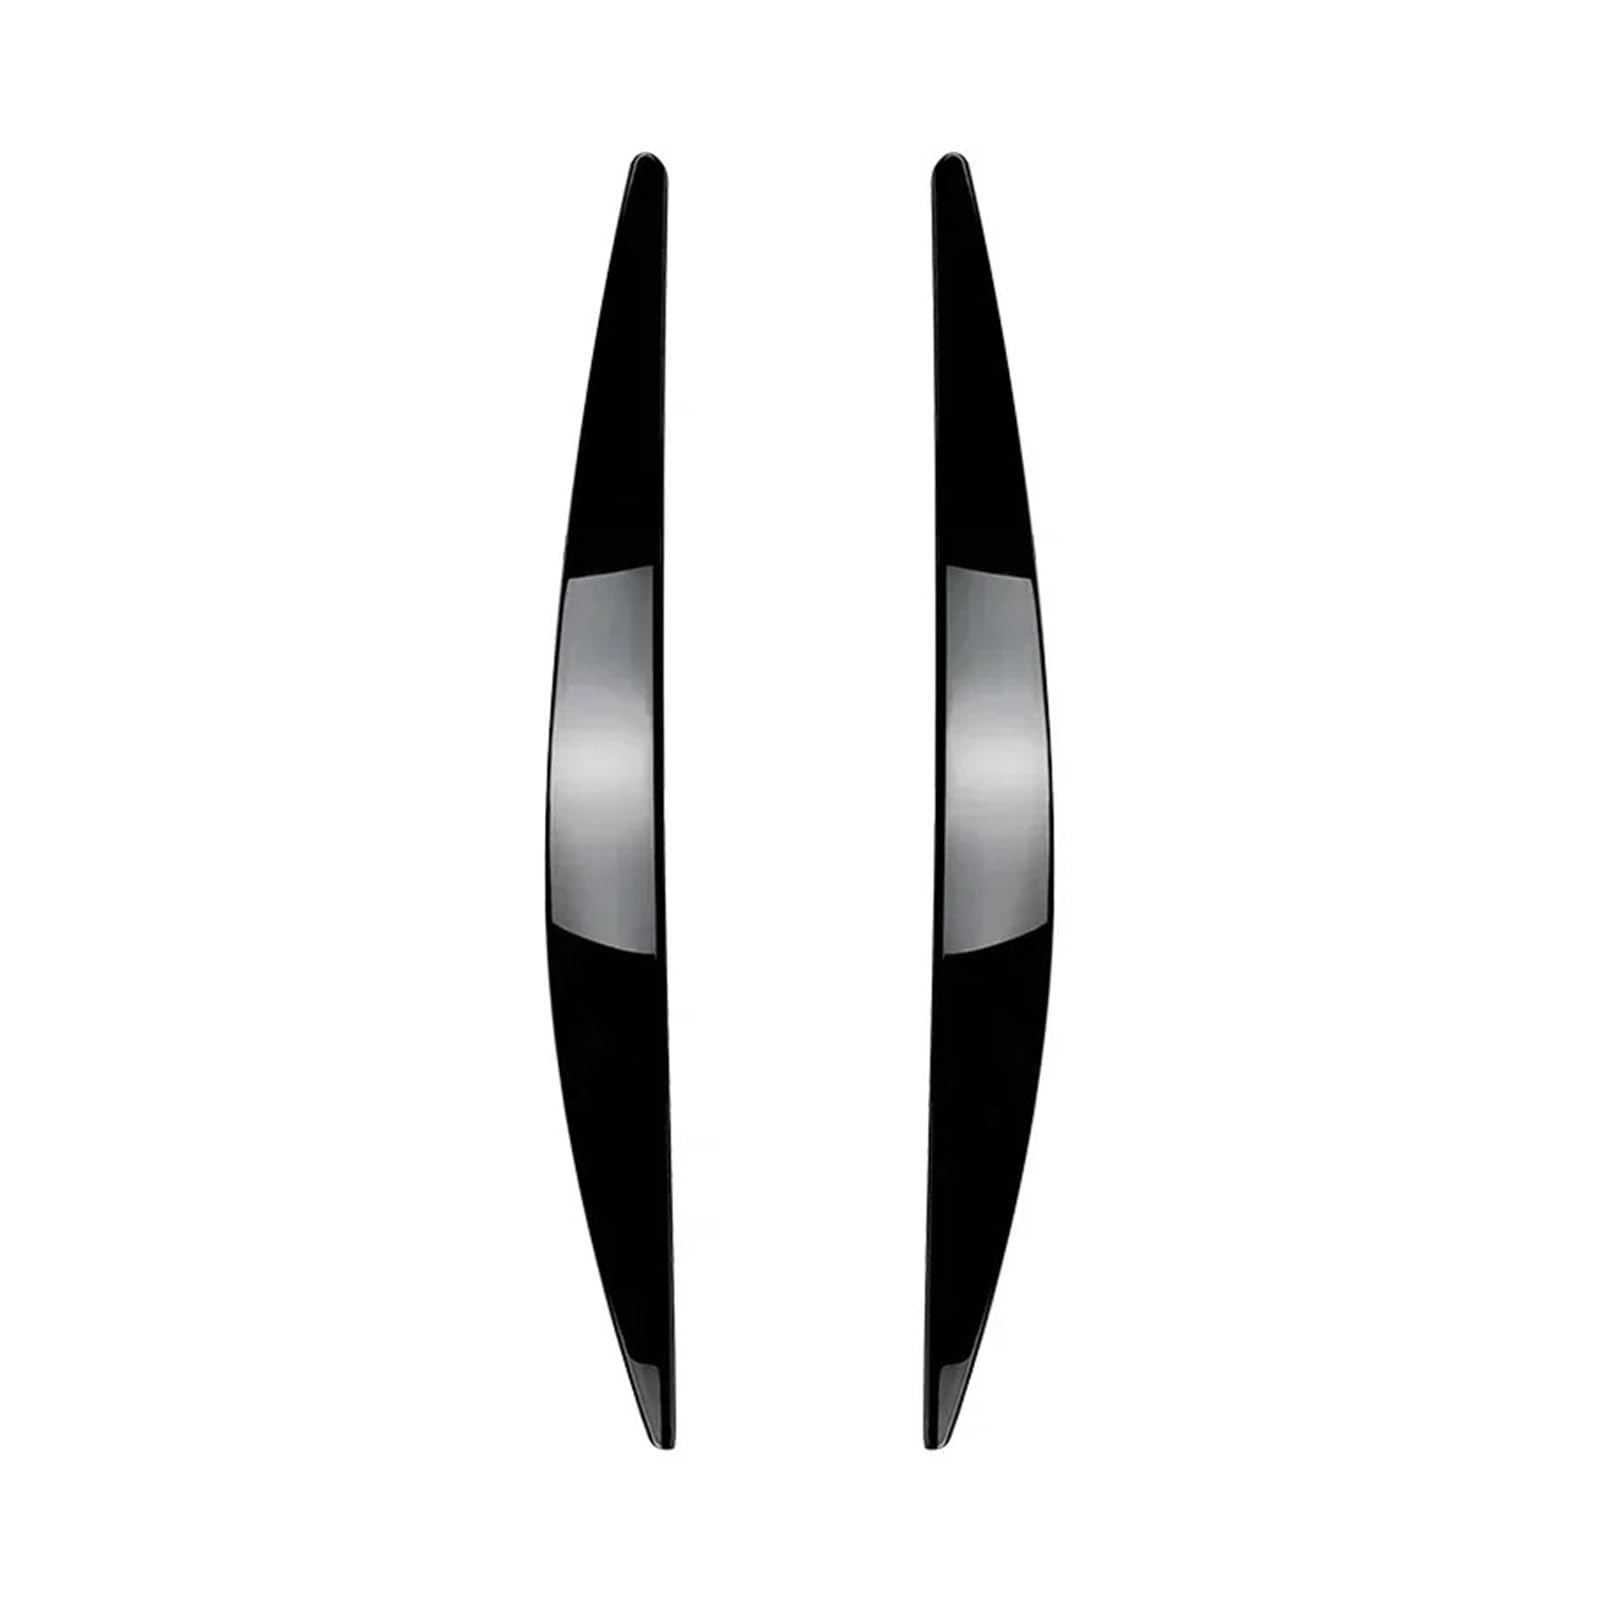 AIJIAMAN 1 Paar Auto-Frontscheinwerferabdeckung, passend for Skoda Octavia MK3 2015 2016 2017, Zubehör, schwarz glänzend, Carbon-Look, Augenbraue, Augenlid Automobil-Augenlider(Gloss Black) von AIJIAMAN